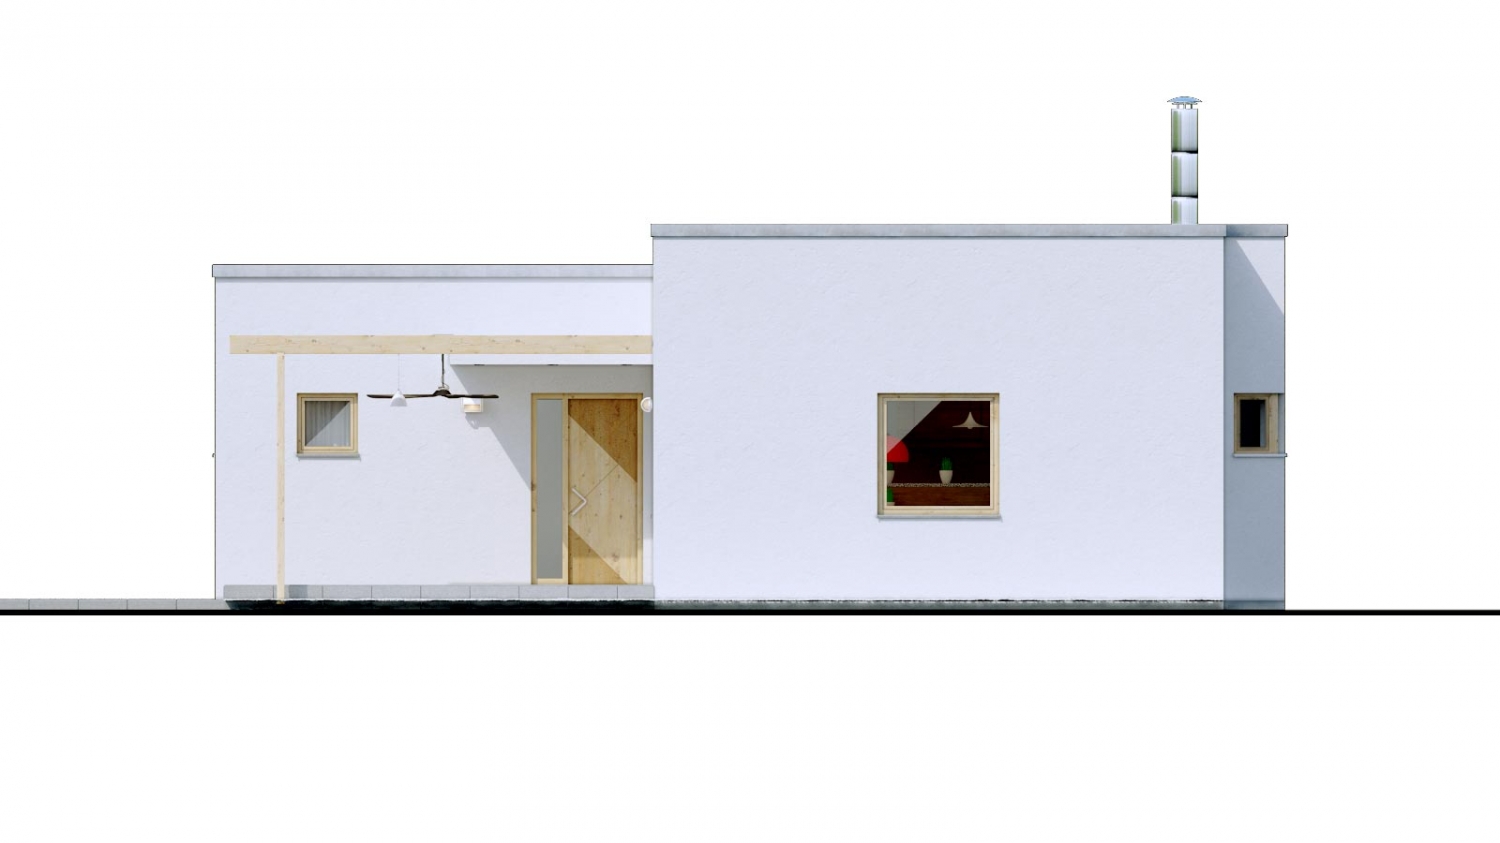 Pohľad 1. - 4-pokojový dům ve tvaru L s plochou střechou. Kuchyň s obývákem tvoří velkoprostor.